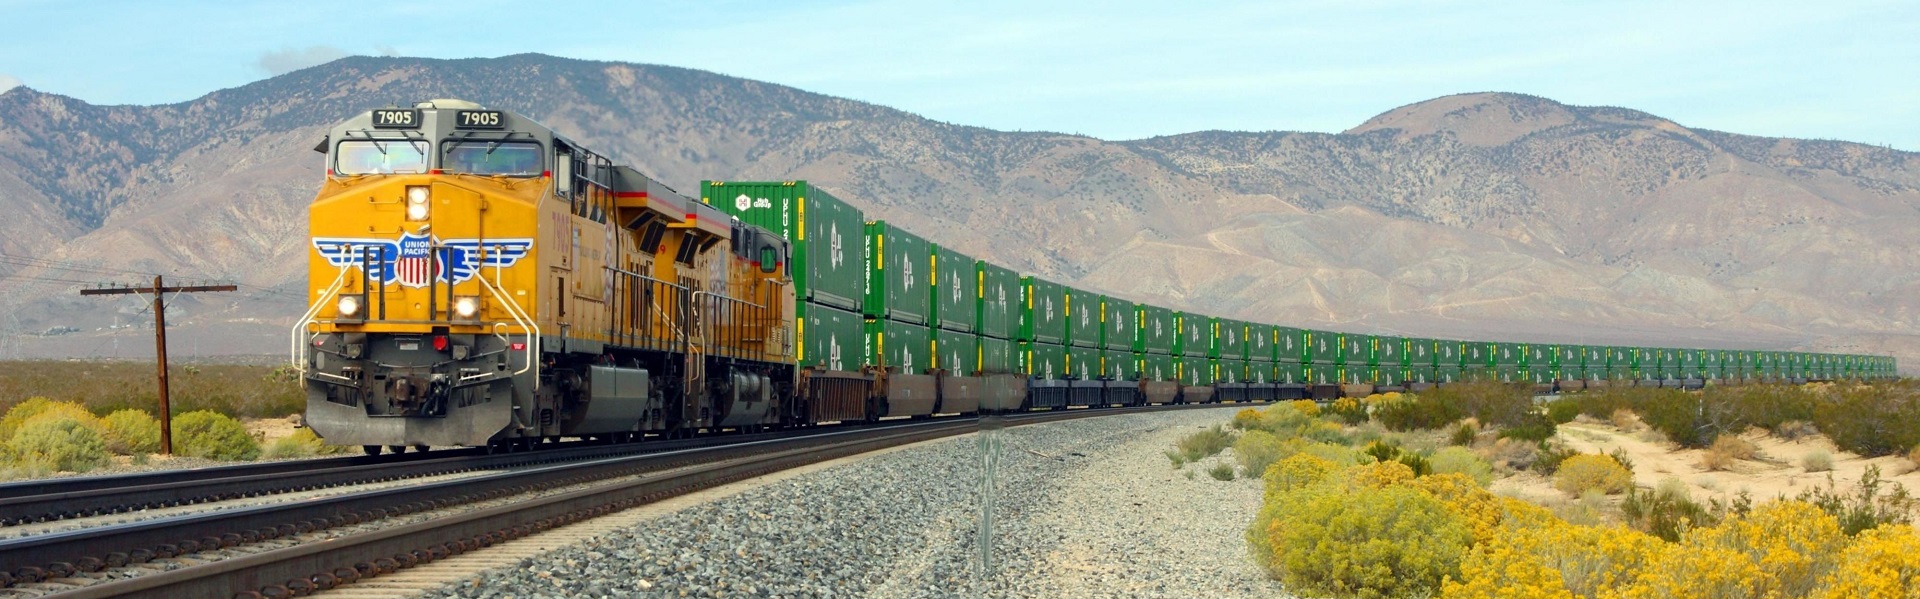 Union Pacific Intermodal train near Mojave, California